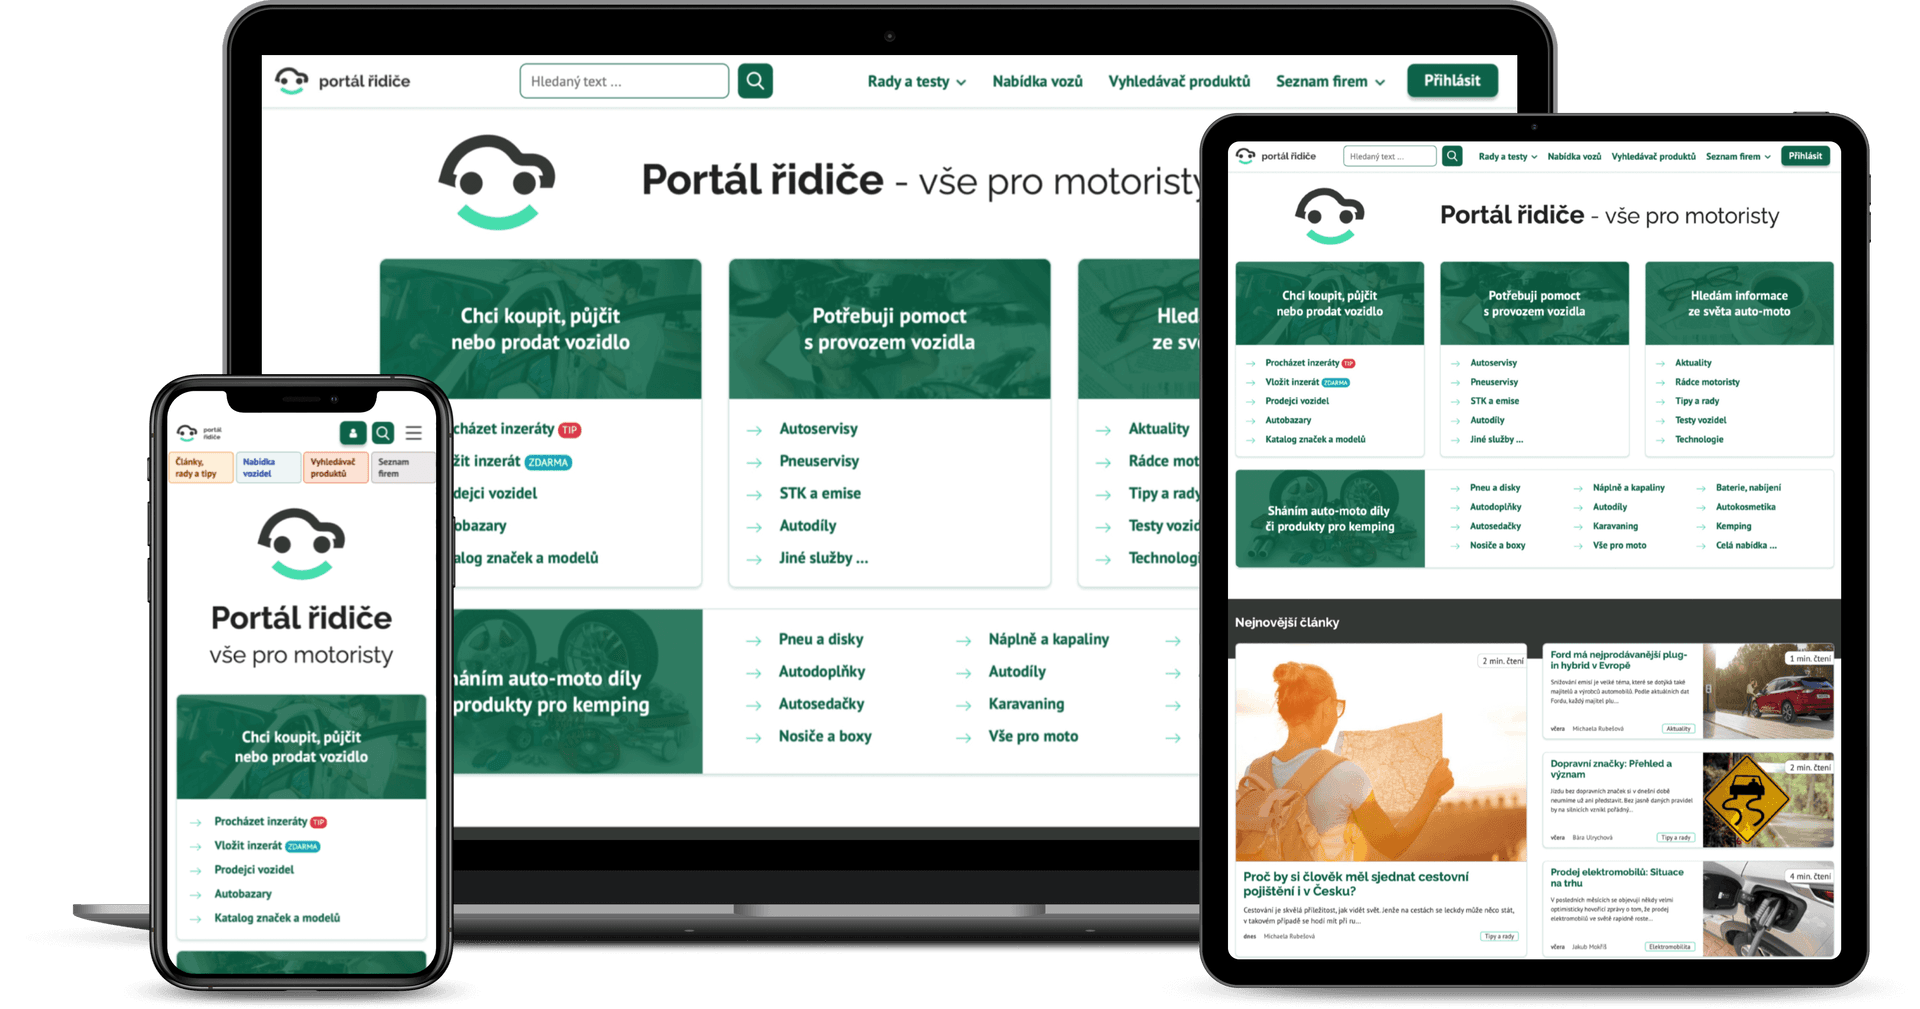 Portál řidiče - jedinečný online prostor pro všechny motoristy